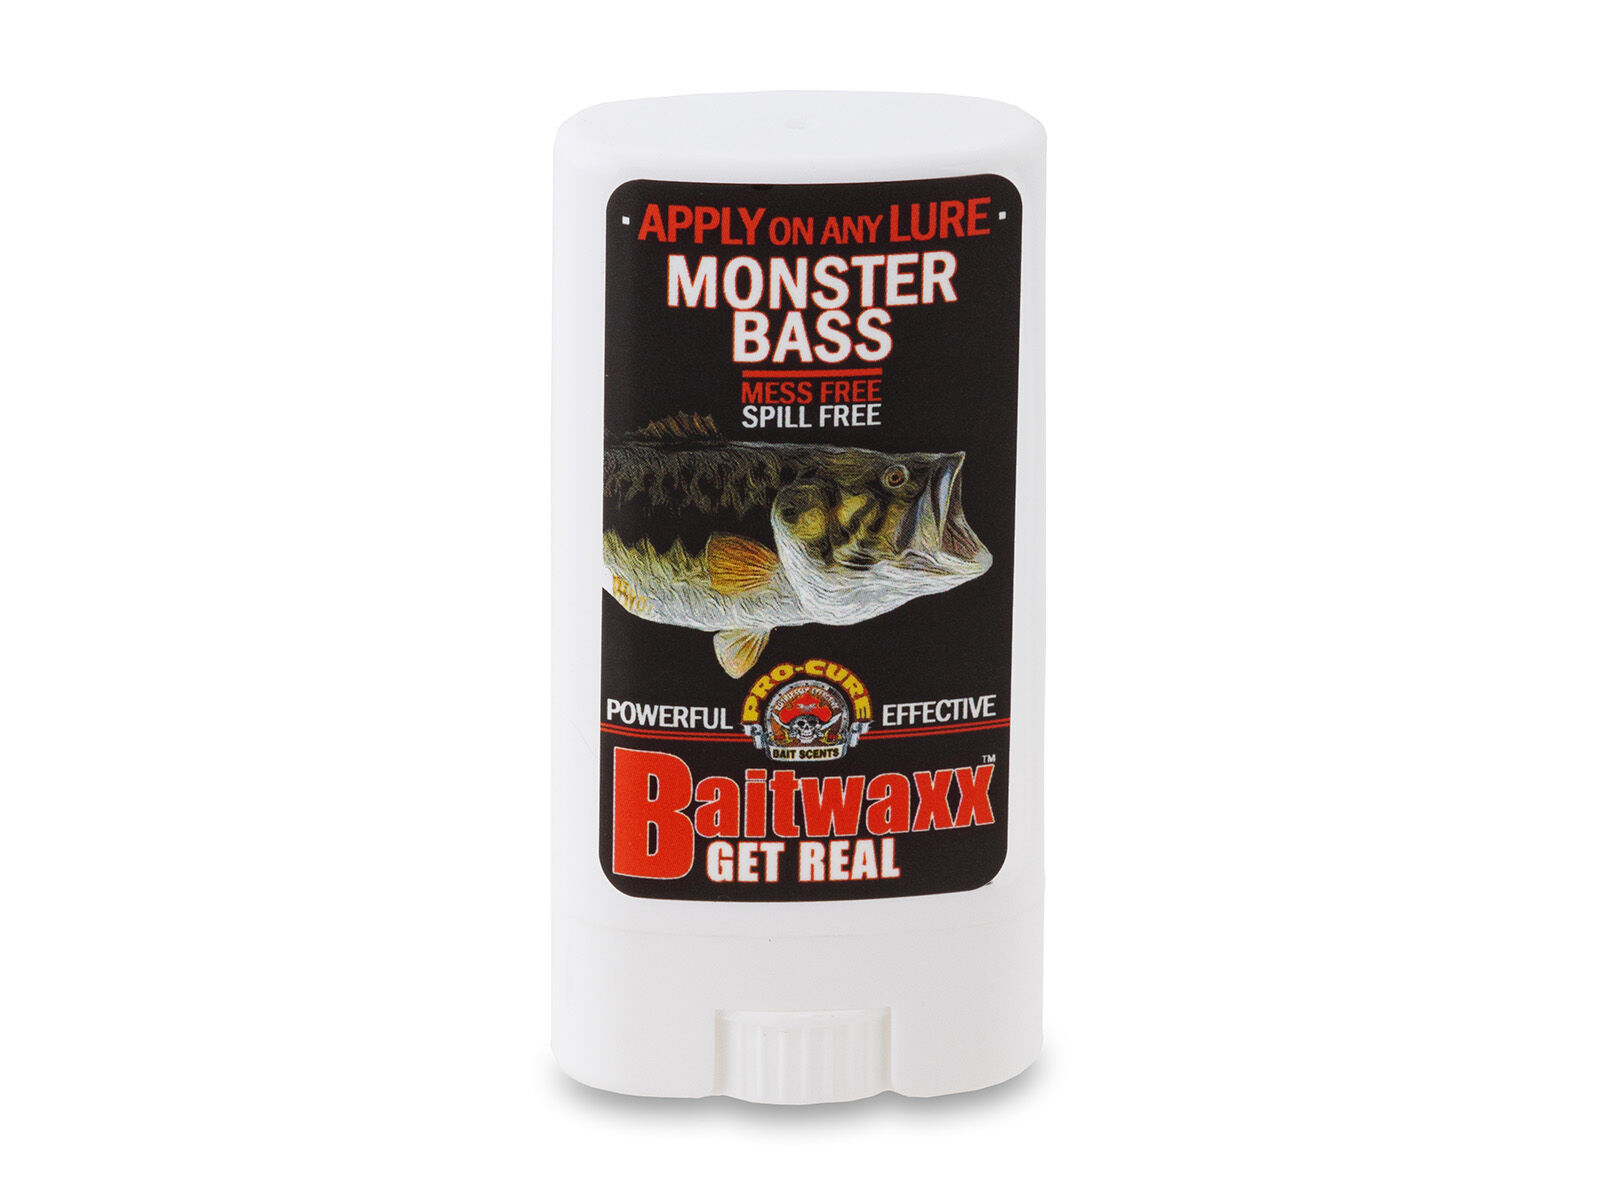 Pro-Cure Baitwaxx - Monster Bass